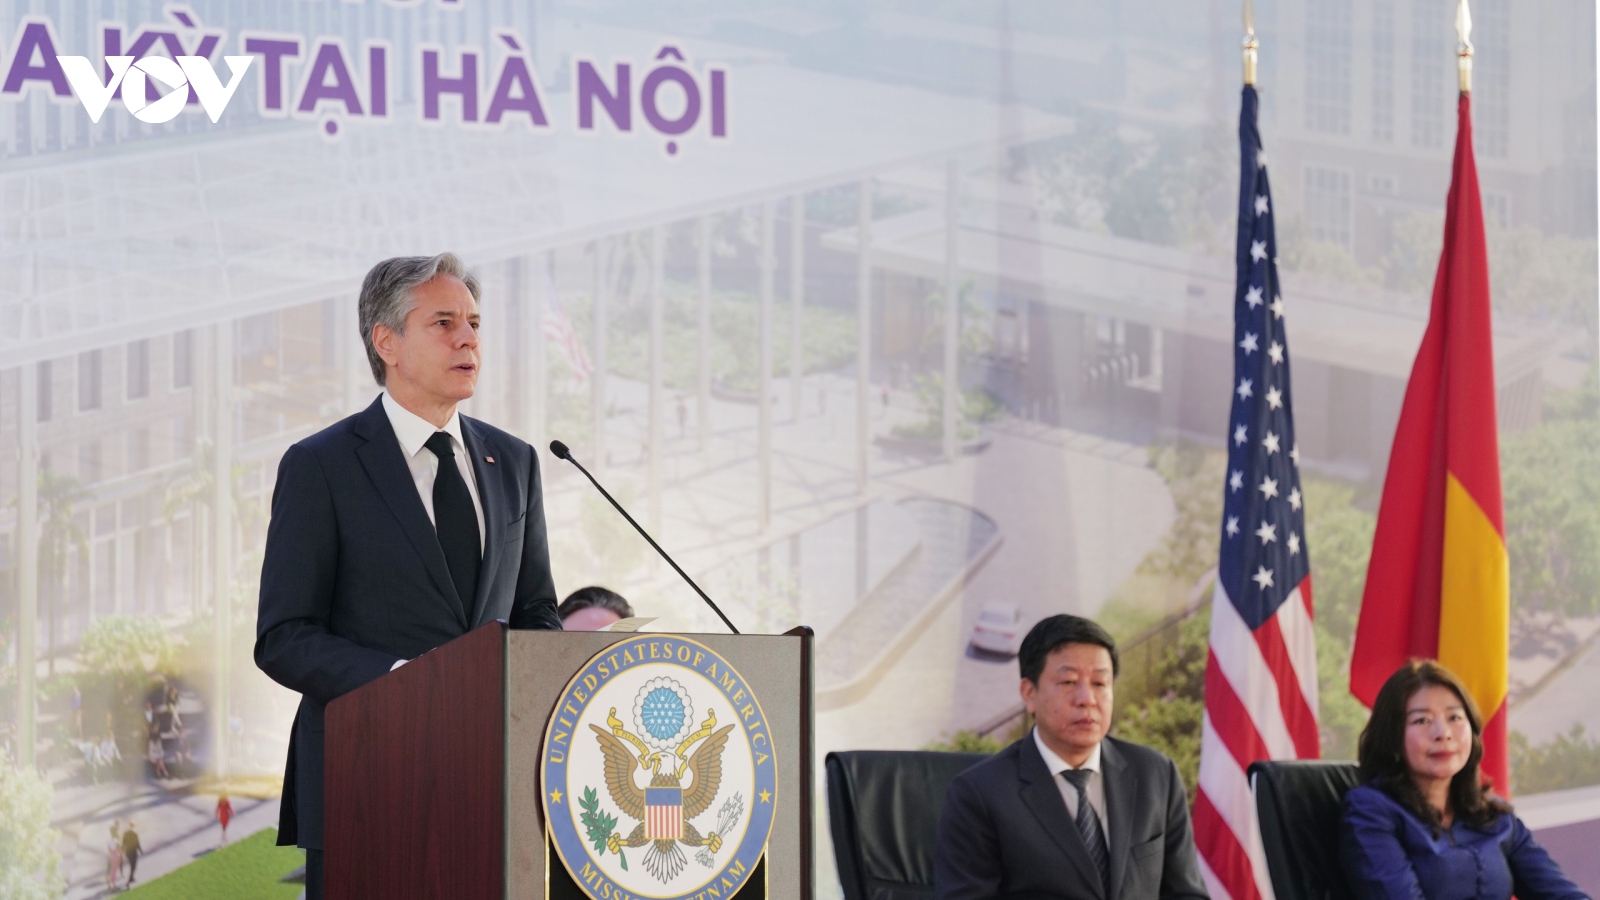 Ngoại trưởng Blinken khởi công trụ sở Đại sứ quán Mỹ mới ở Hà Nội